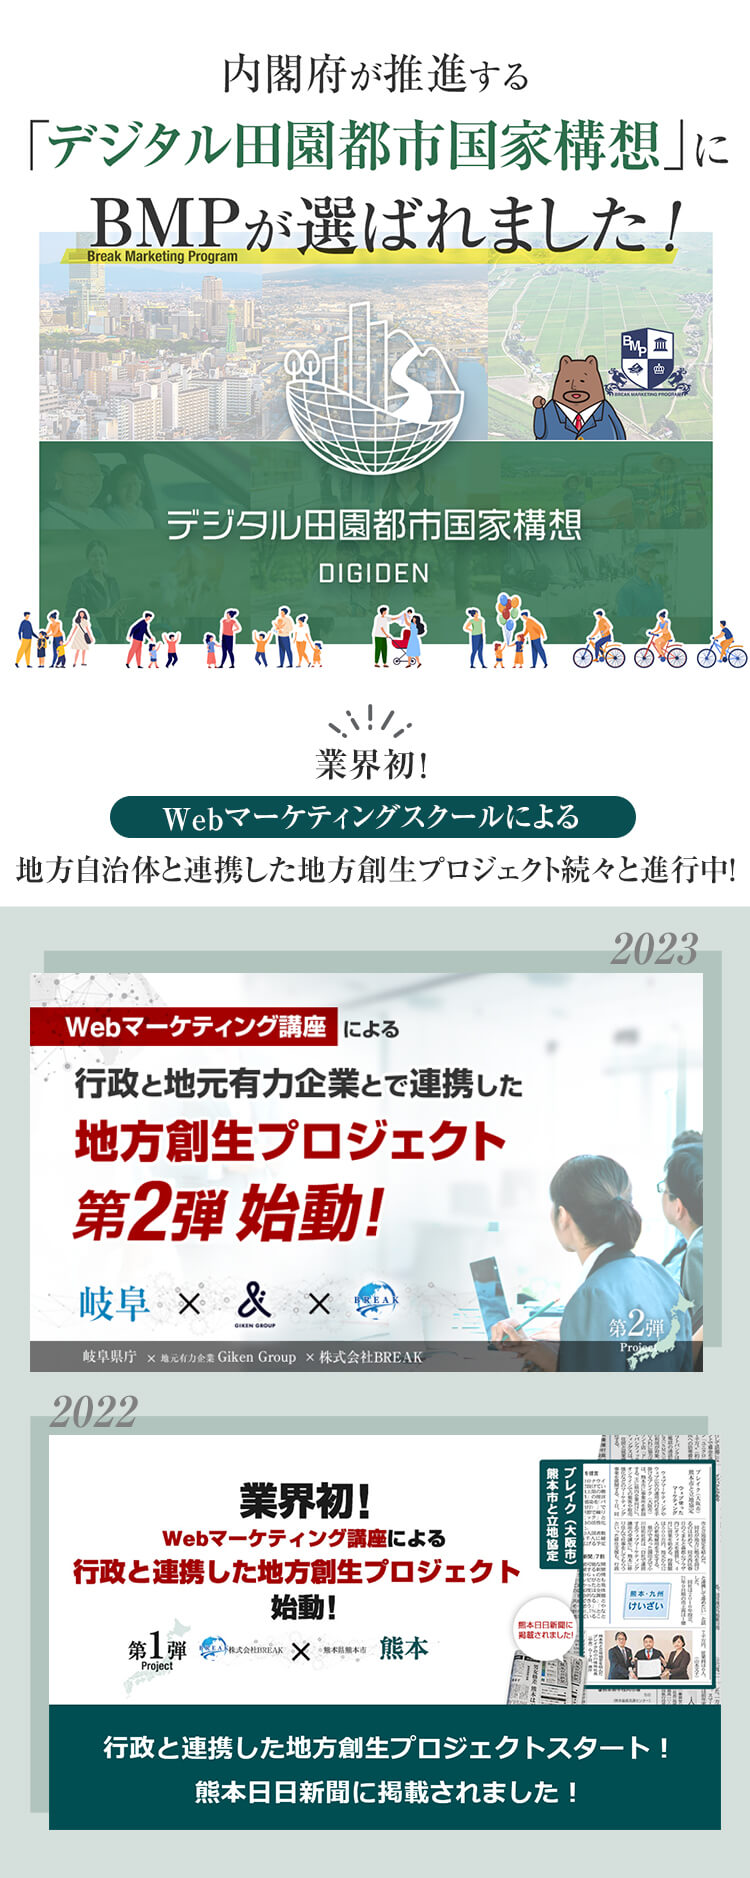 行政と連携した新プロジェクト 熊本日日新聞